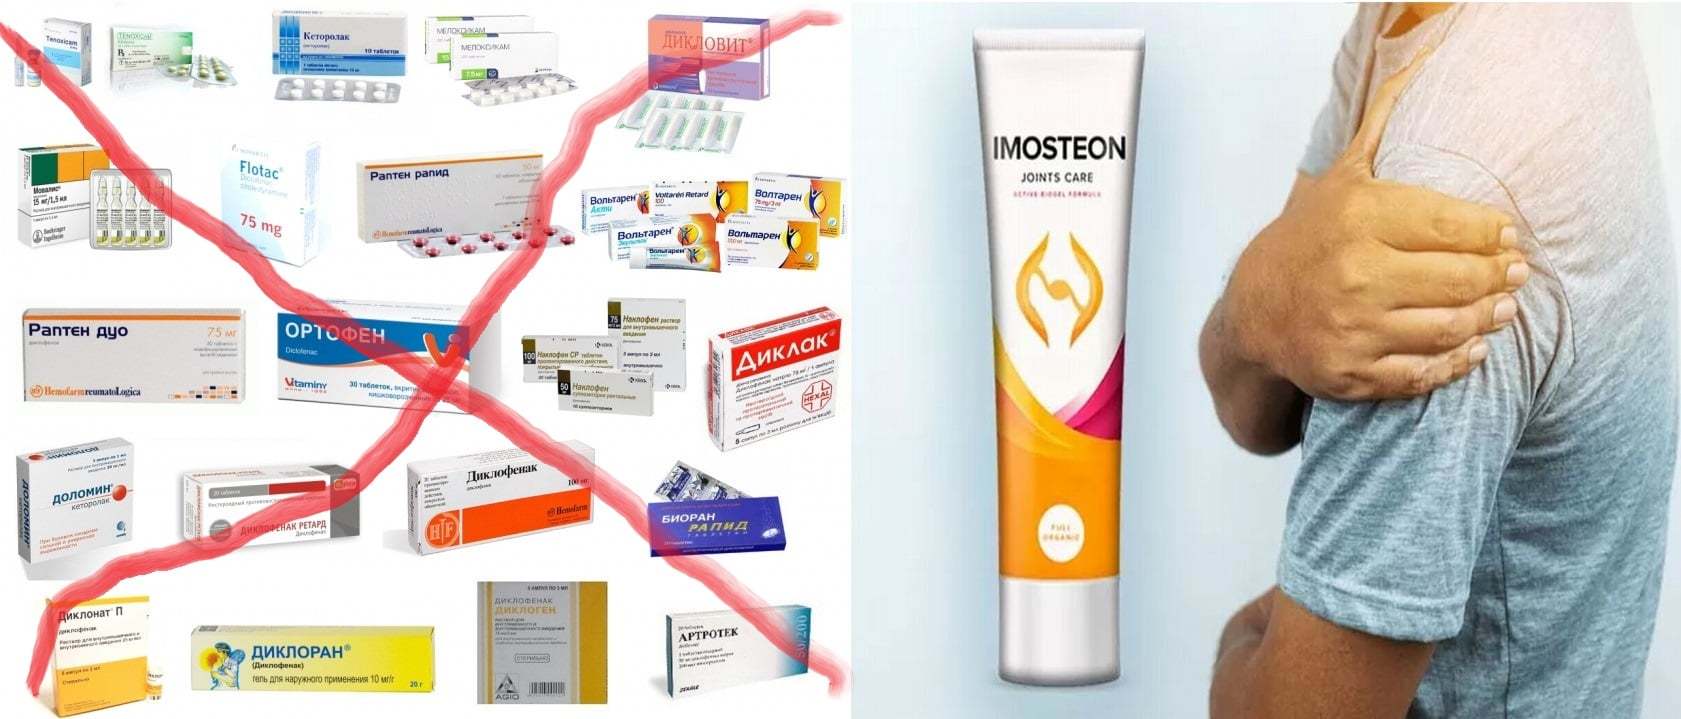 ᐉ Imosteon preț în farmacii • păreri reale ale medicilor și ale clienților - forum • prospect 